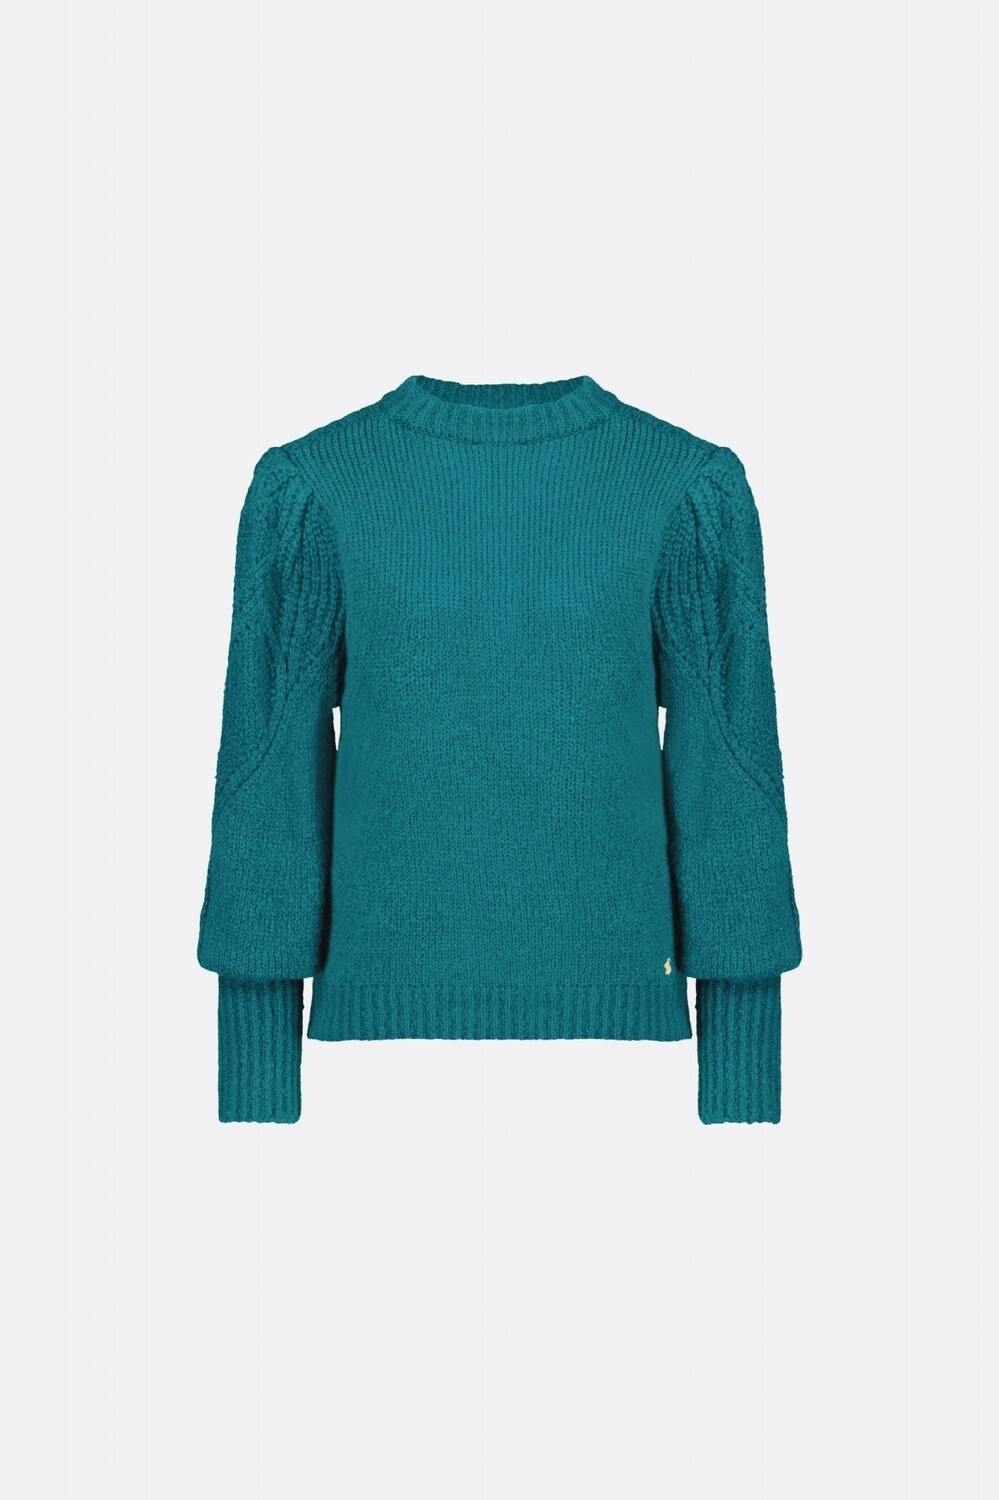 Fabienne Chapot cathy pullover groen